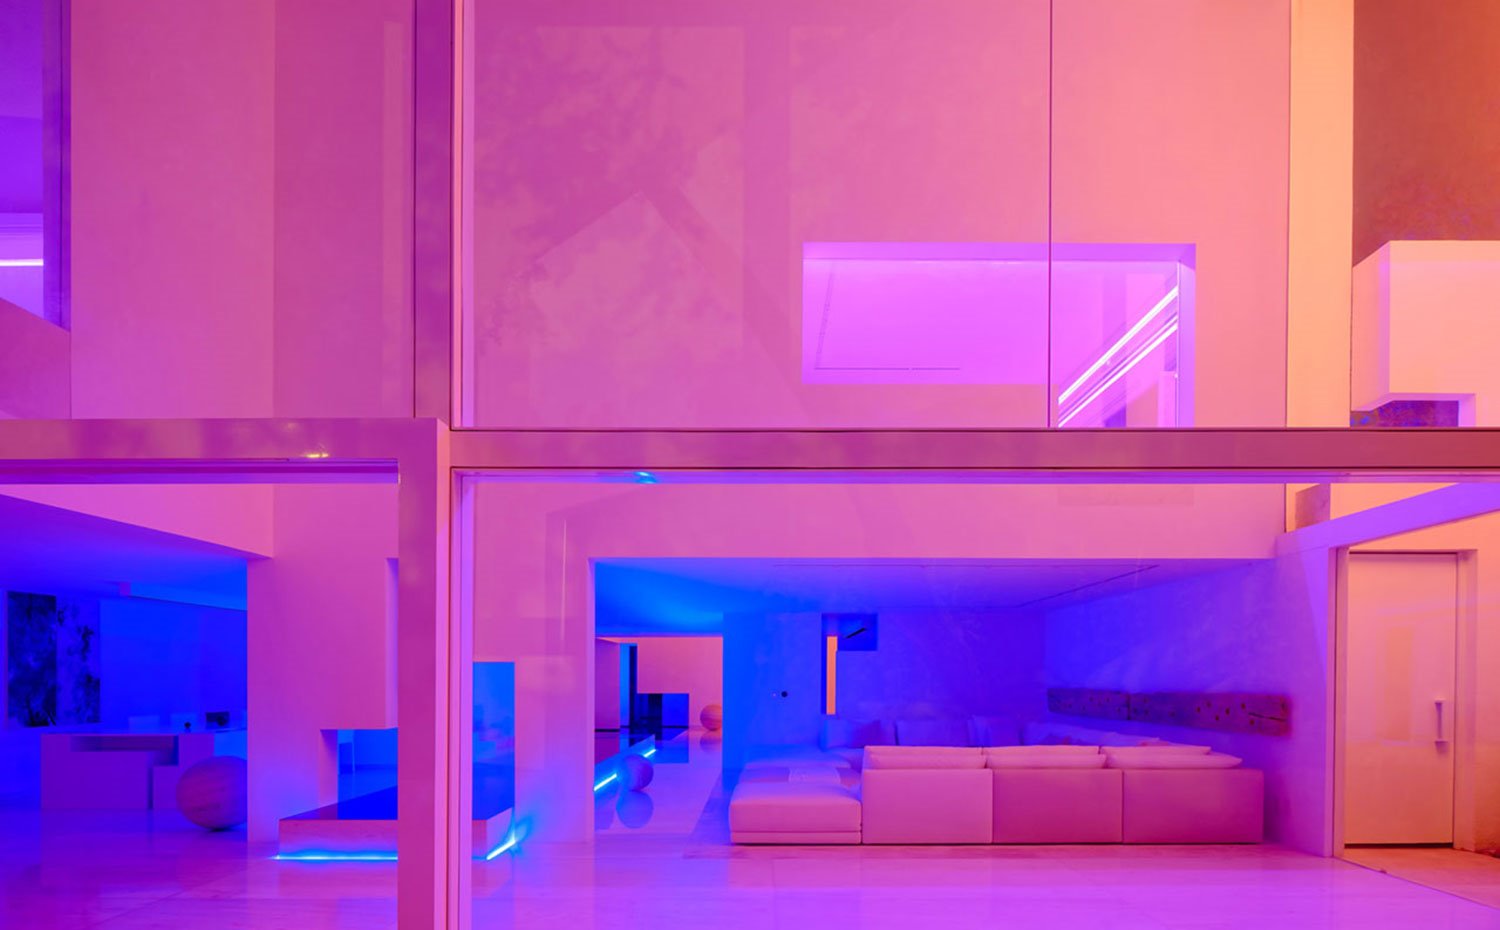 Vista exterior de interior con iluminación con neones, aperturas geométricas, paredes en blanco con reflejos de colores